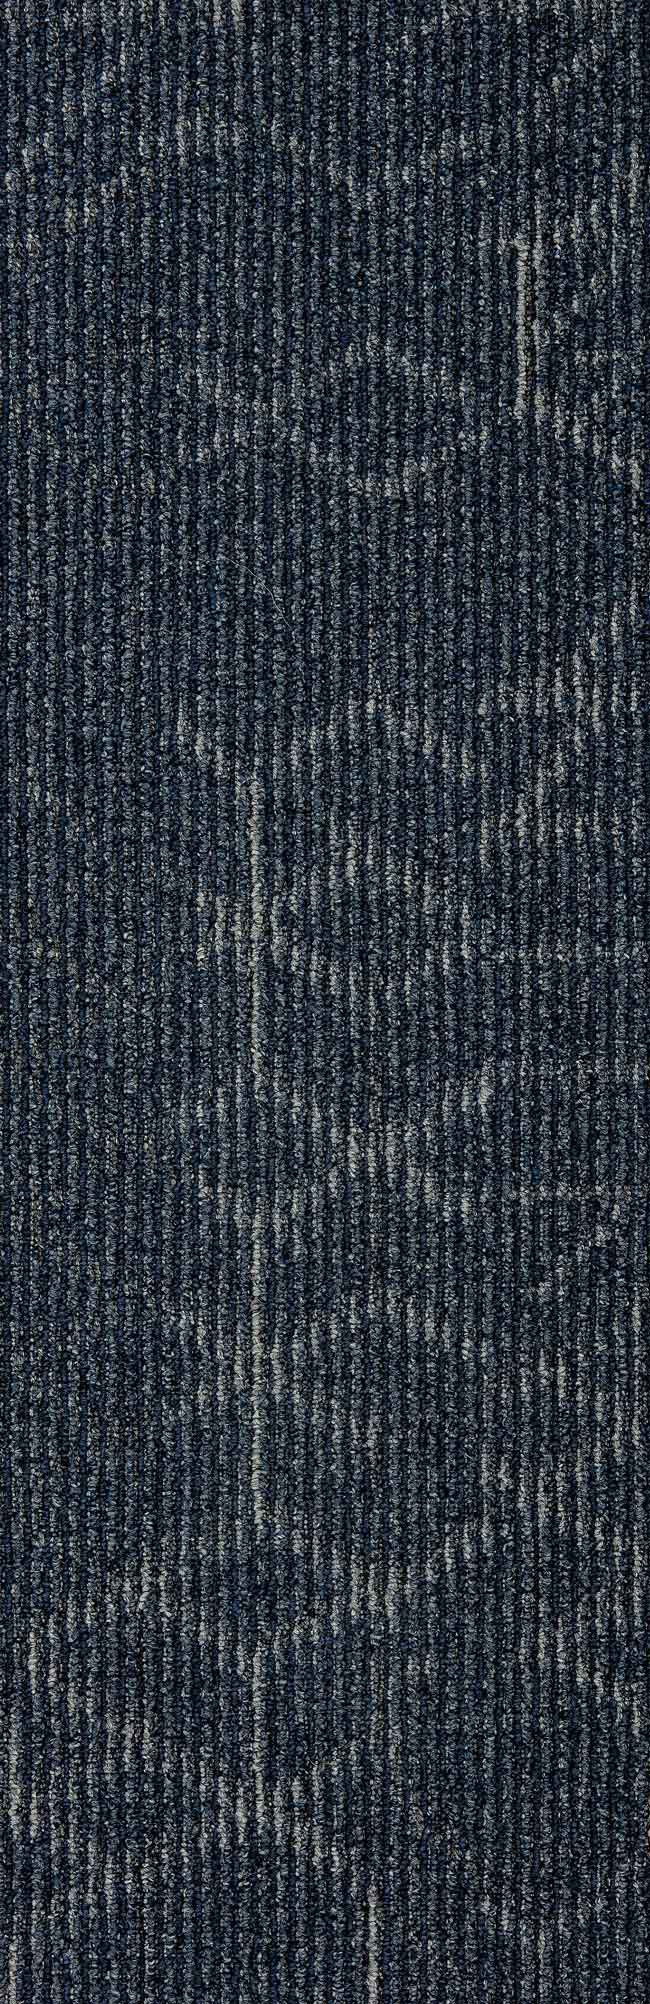 Mohawk Group Angled Perception Carpet Tile Indigo Ink 12" x 36"